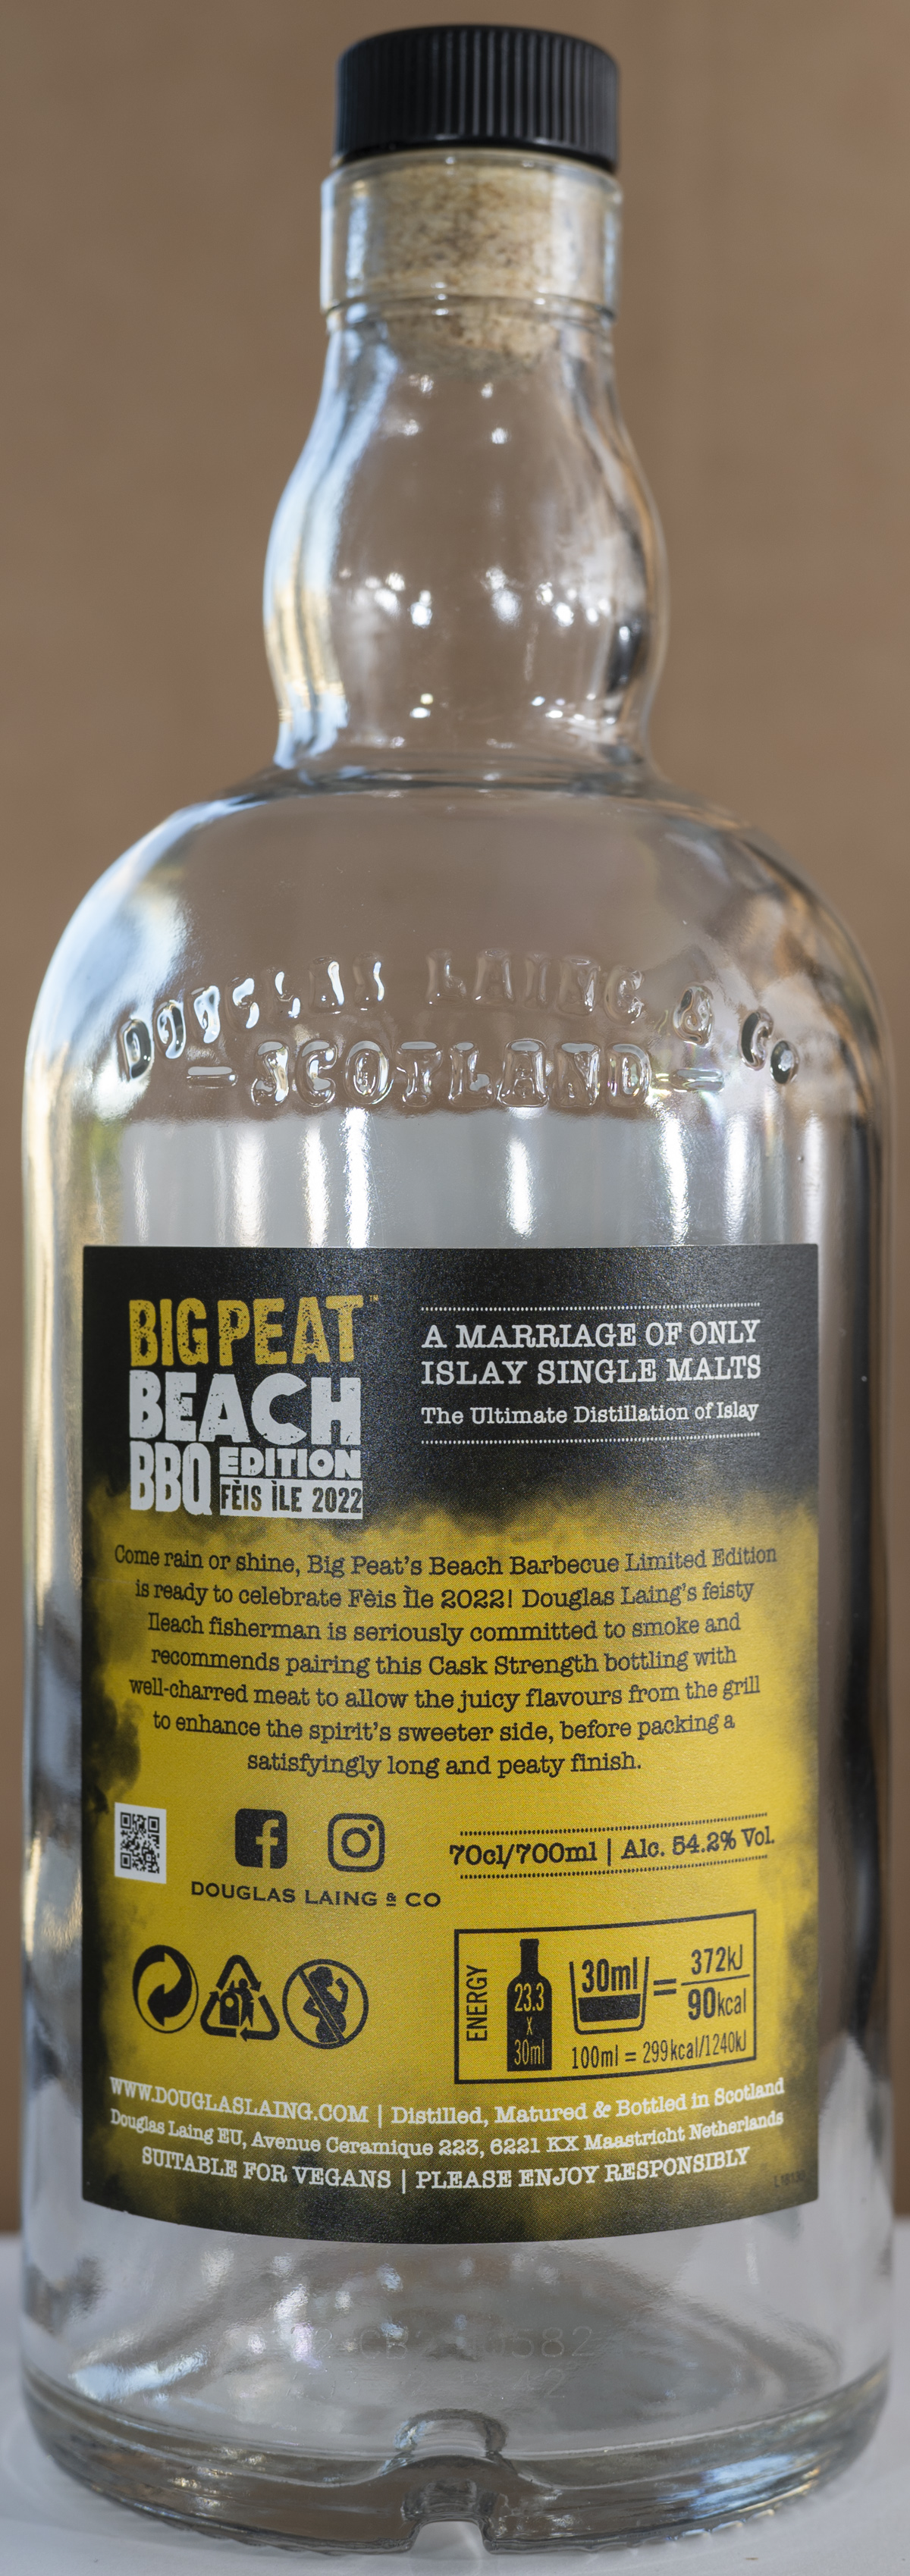 Billede: DSC_4442 - Big Feat BBQ Edition Feis Isle 2022 - bottle back.jpg